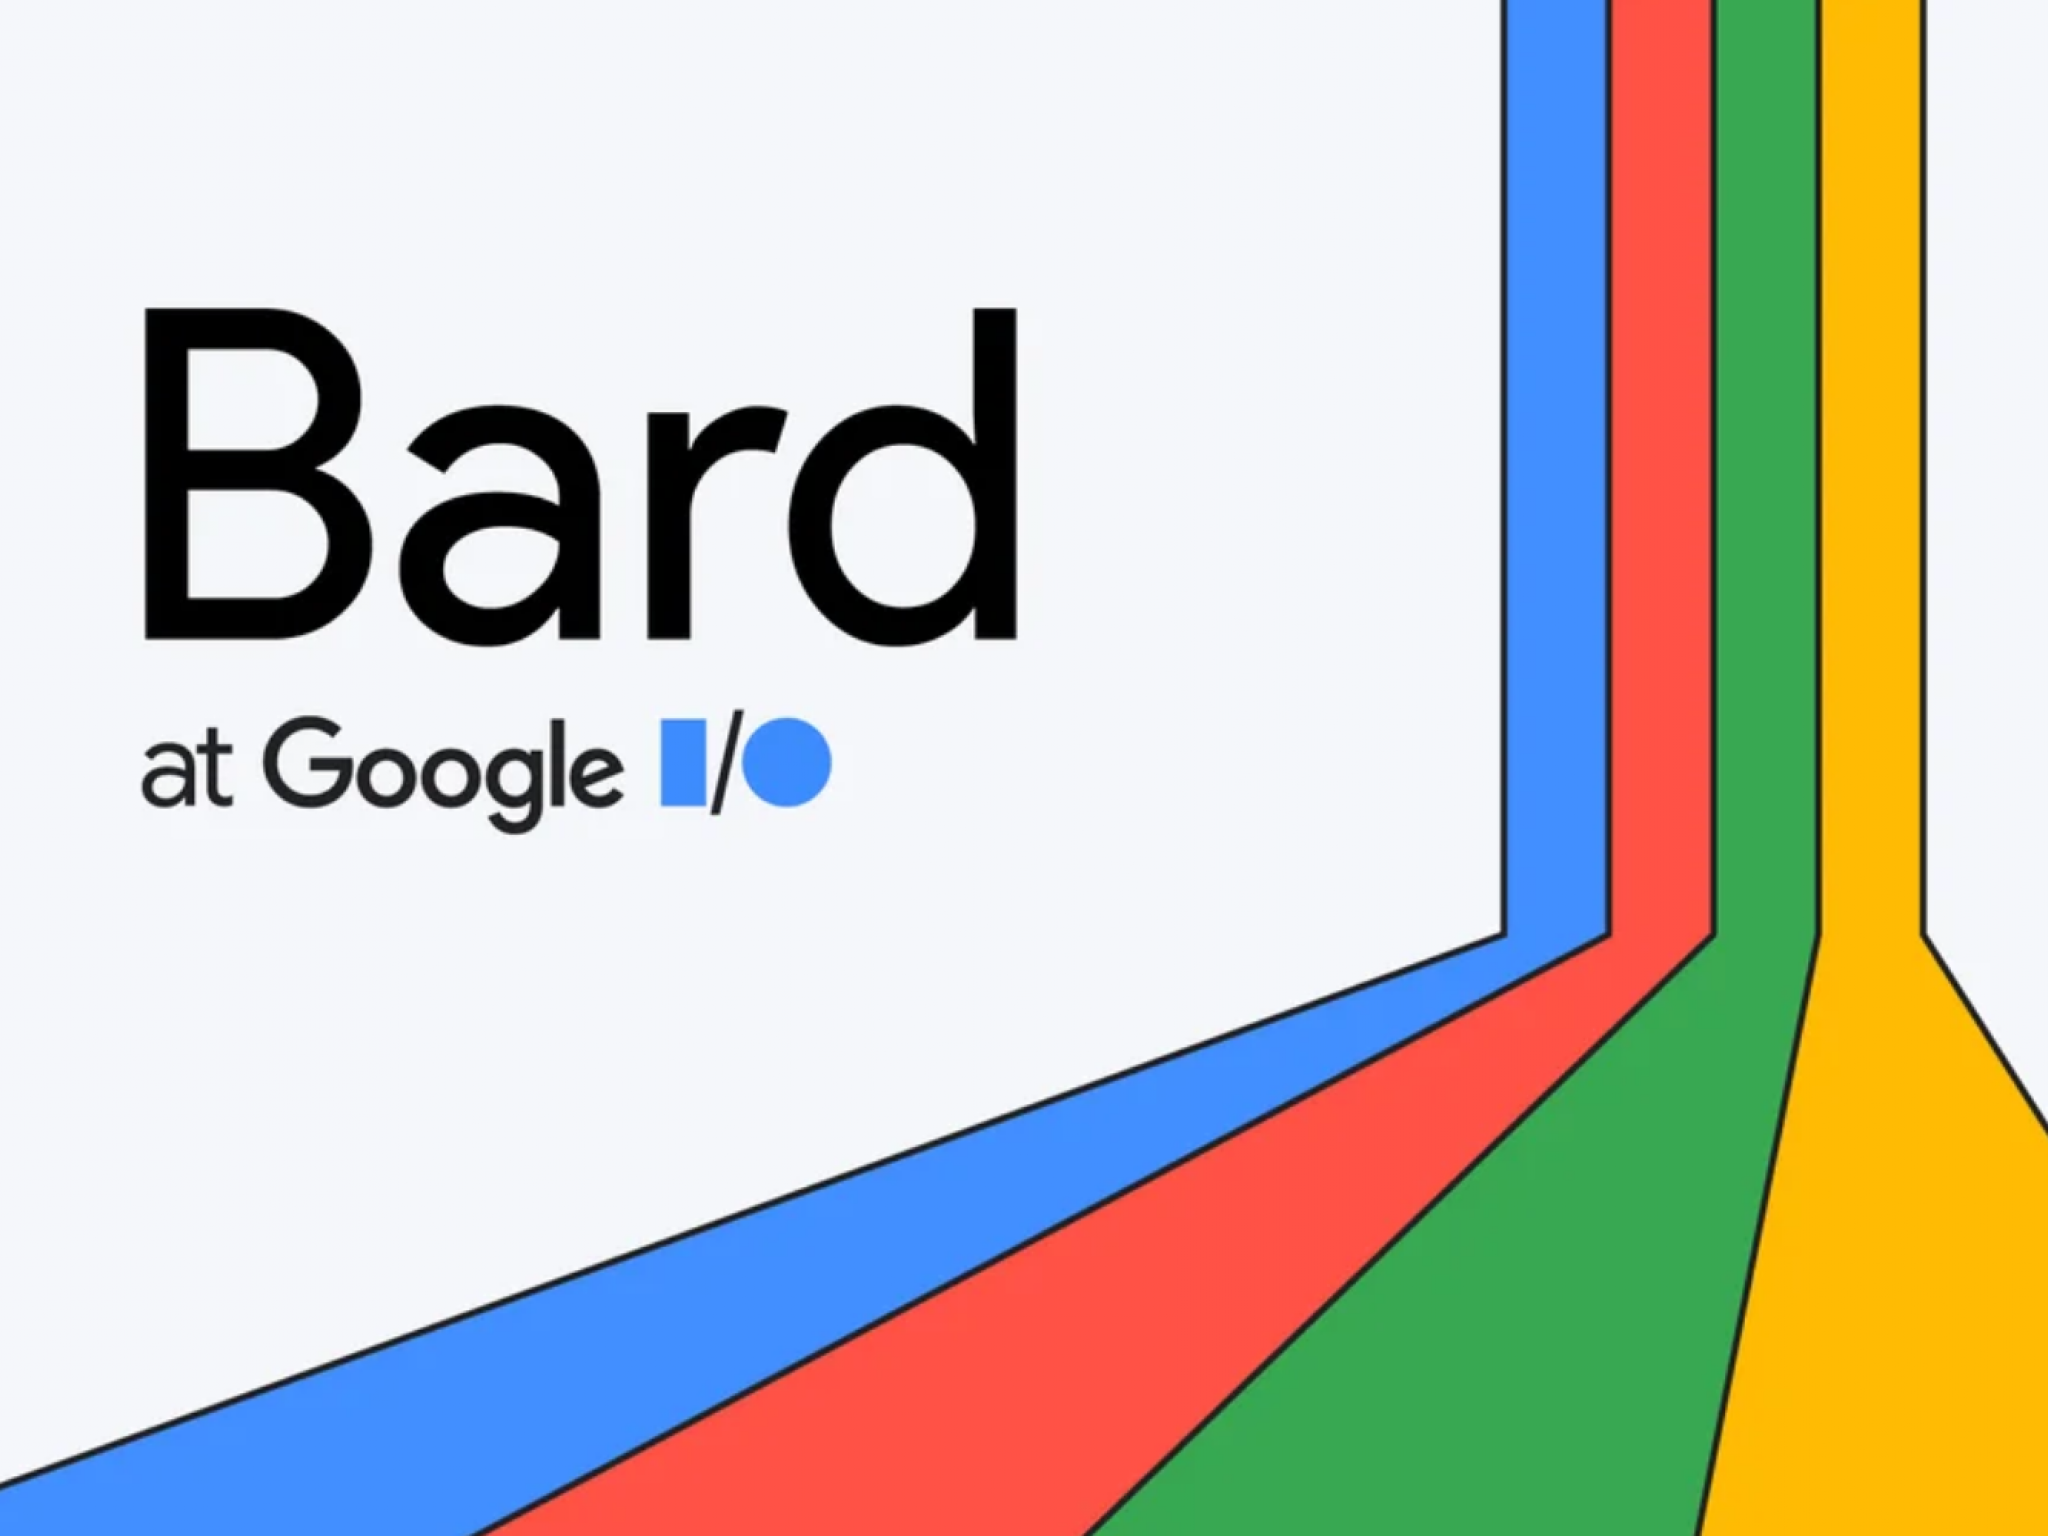 Le chatbot Bard AI de Google devient plus intelligent avec l'intégration de Gmail, Google Docs et YouTube - Goliaths actualités boursière